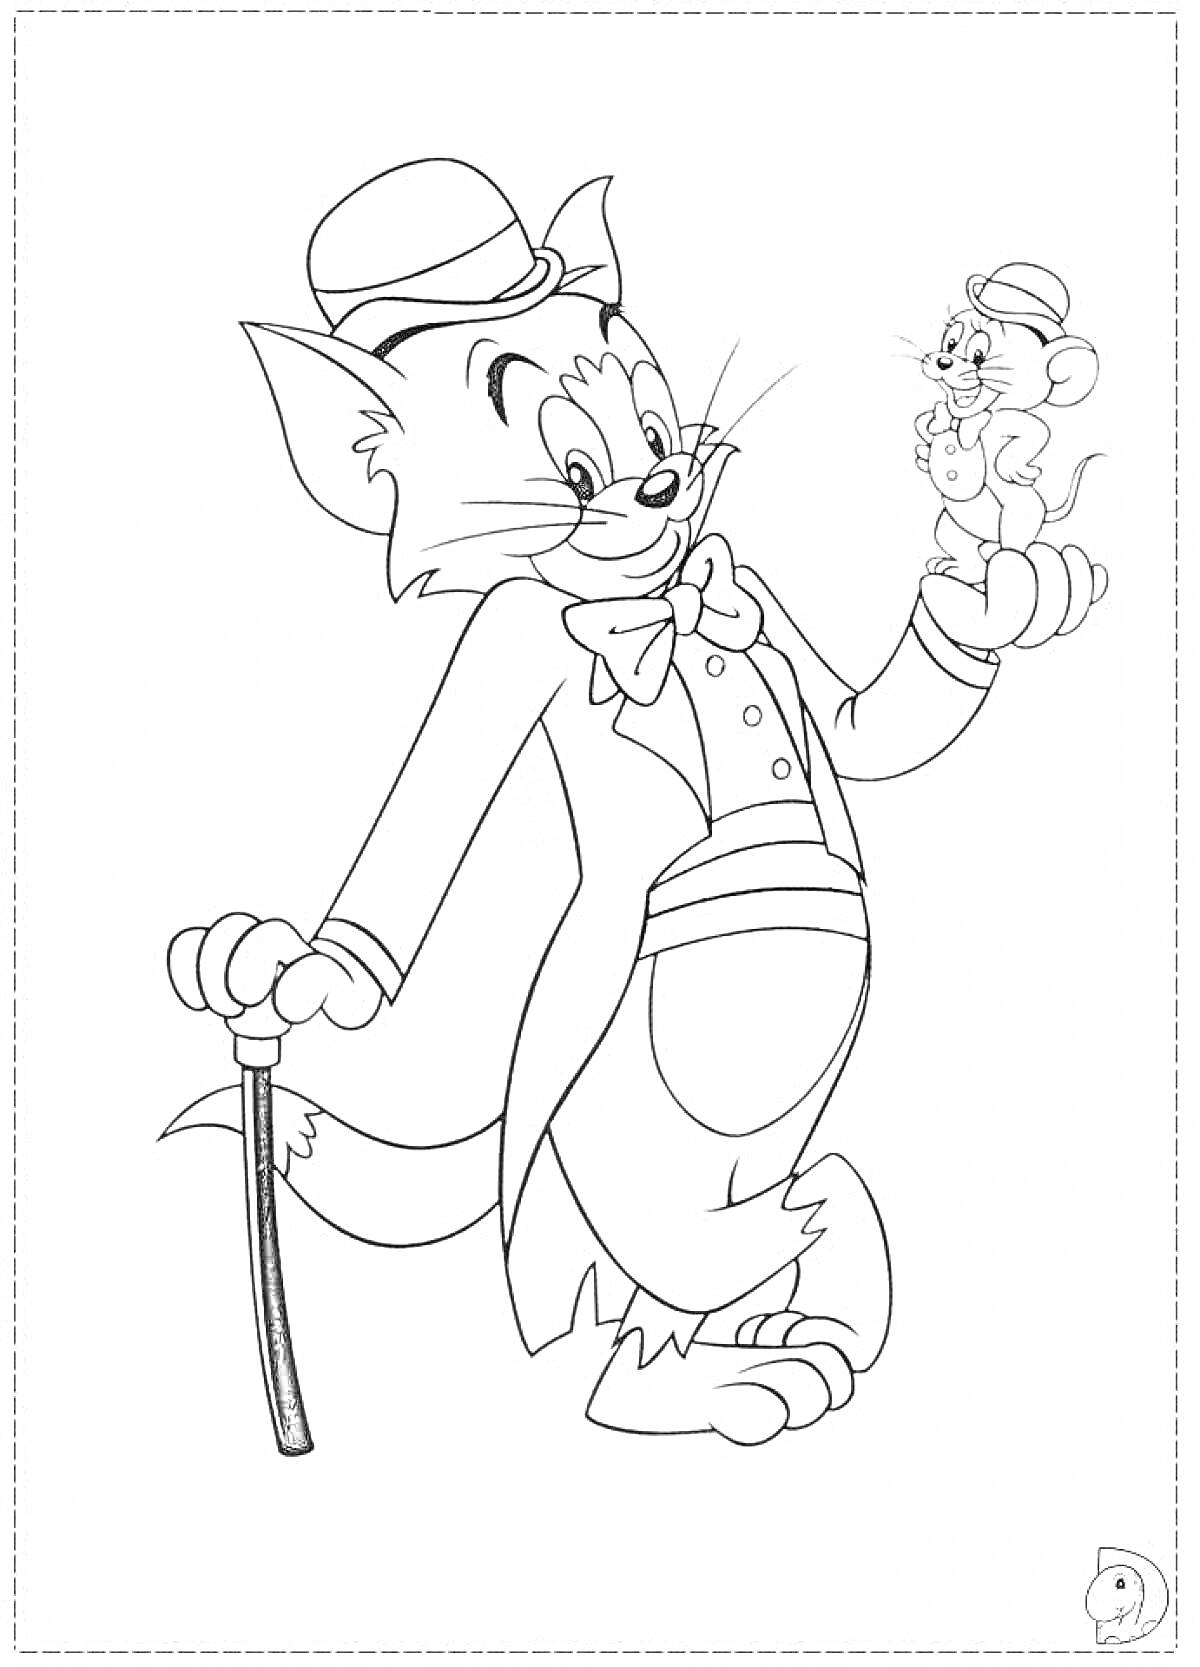 Раскраска Том в смокинге с тростью держит мышонка